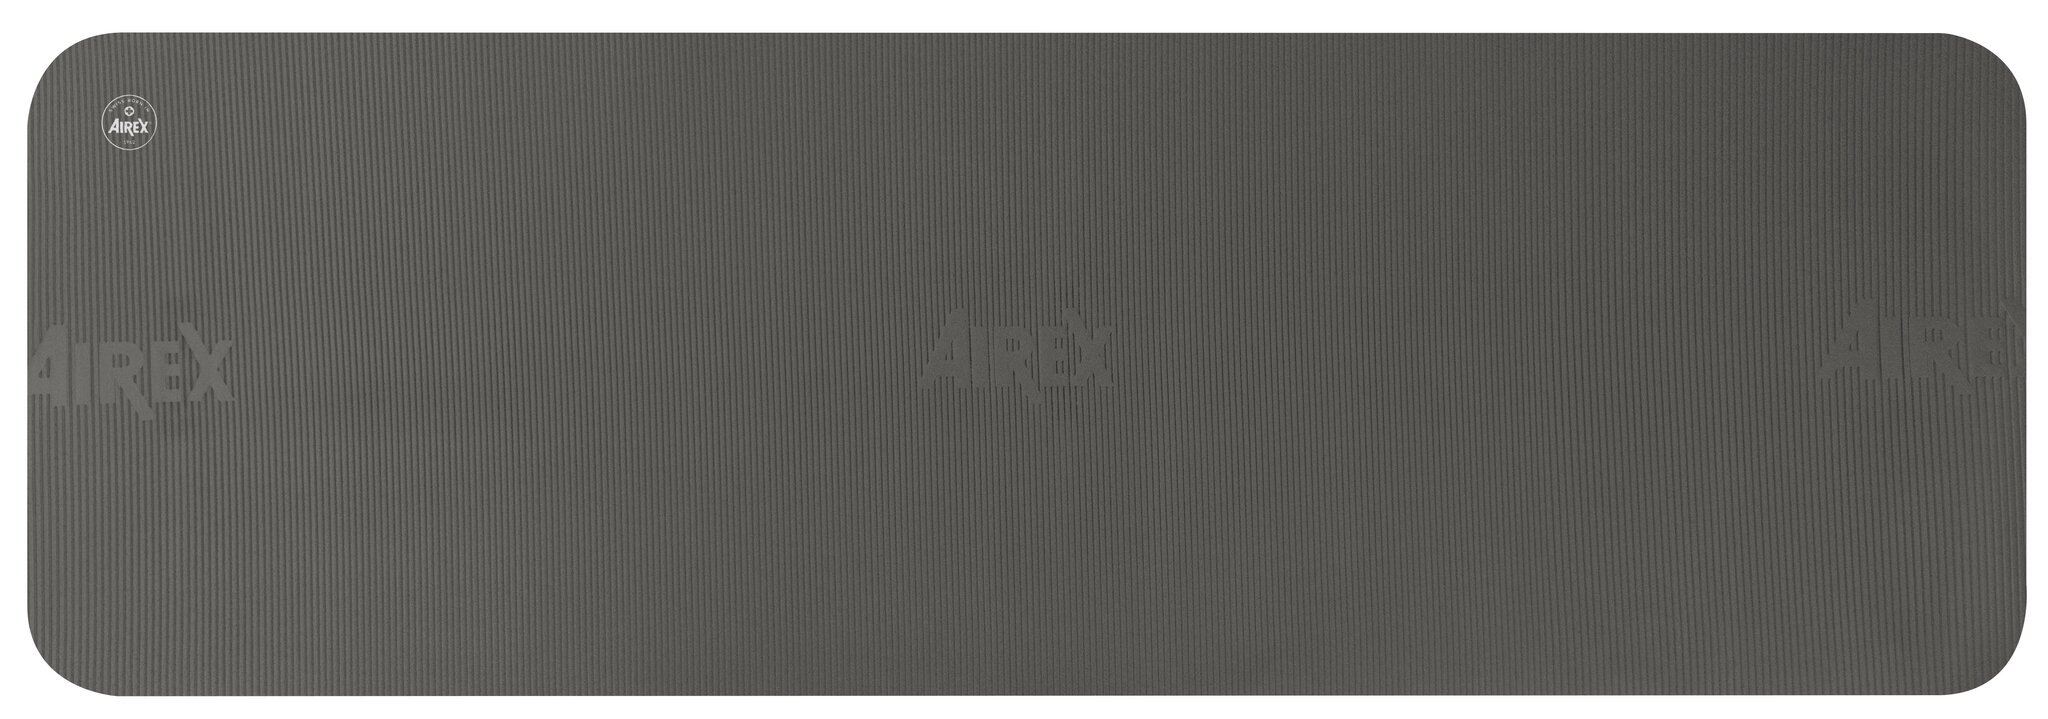 Airex mankštos kilimėlis Fitline 140 juodas kaina ir informacija | Kilimėliai sportui | pigu.lt